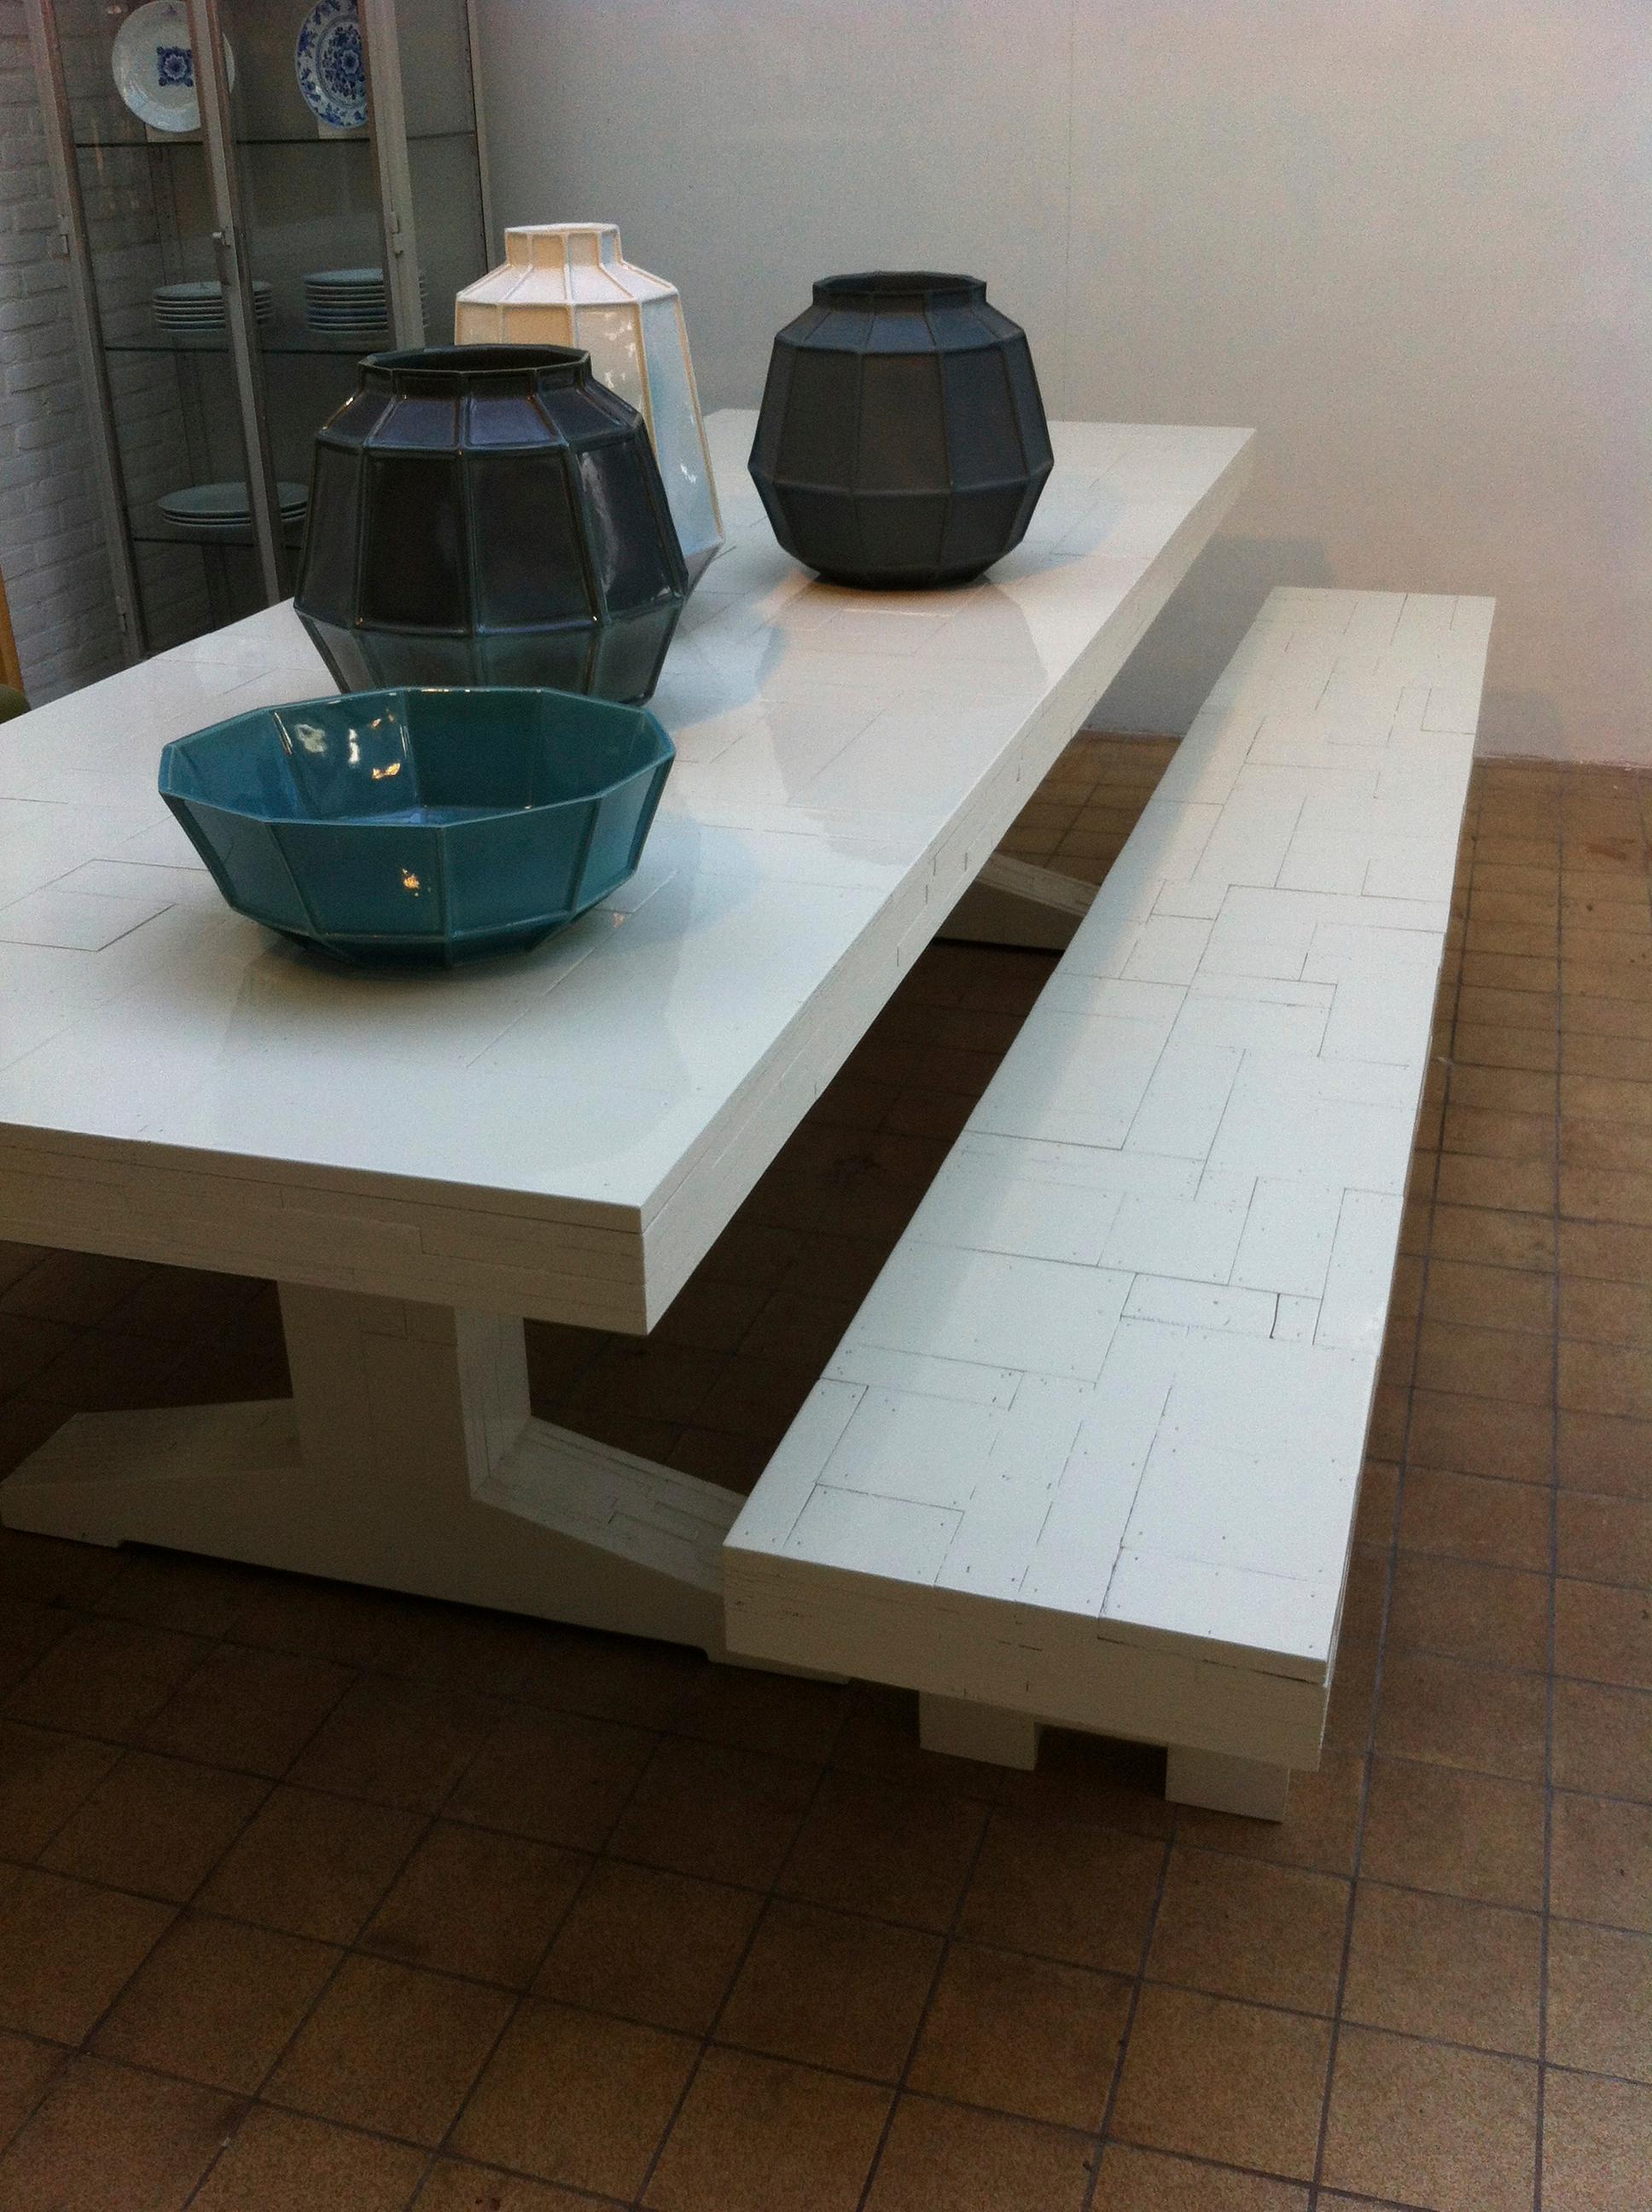 Tisch, Bank, Keramik #holztisch #esstisch #sitzbank #tisch ©POPO GmbH